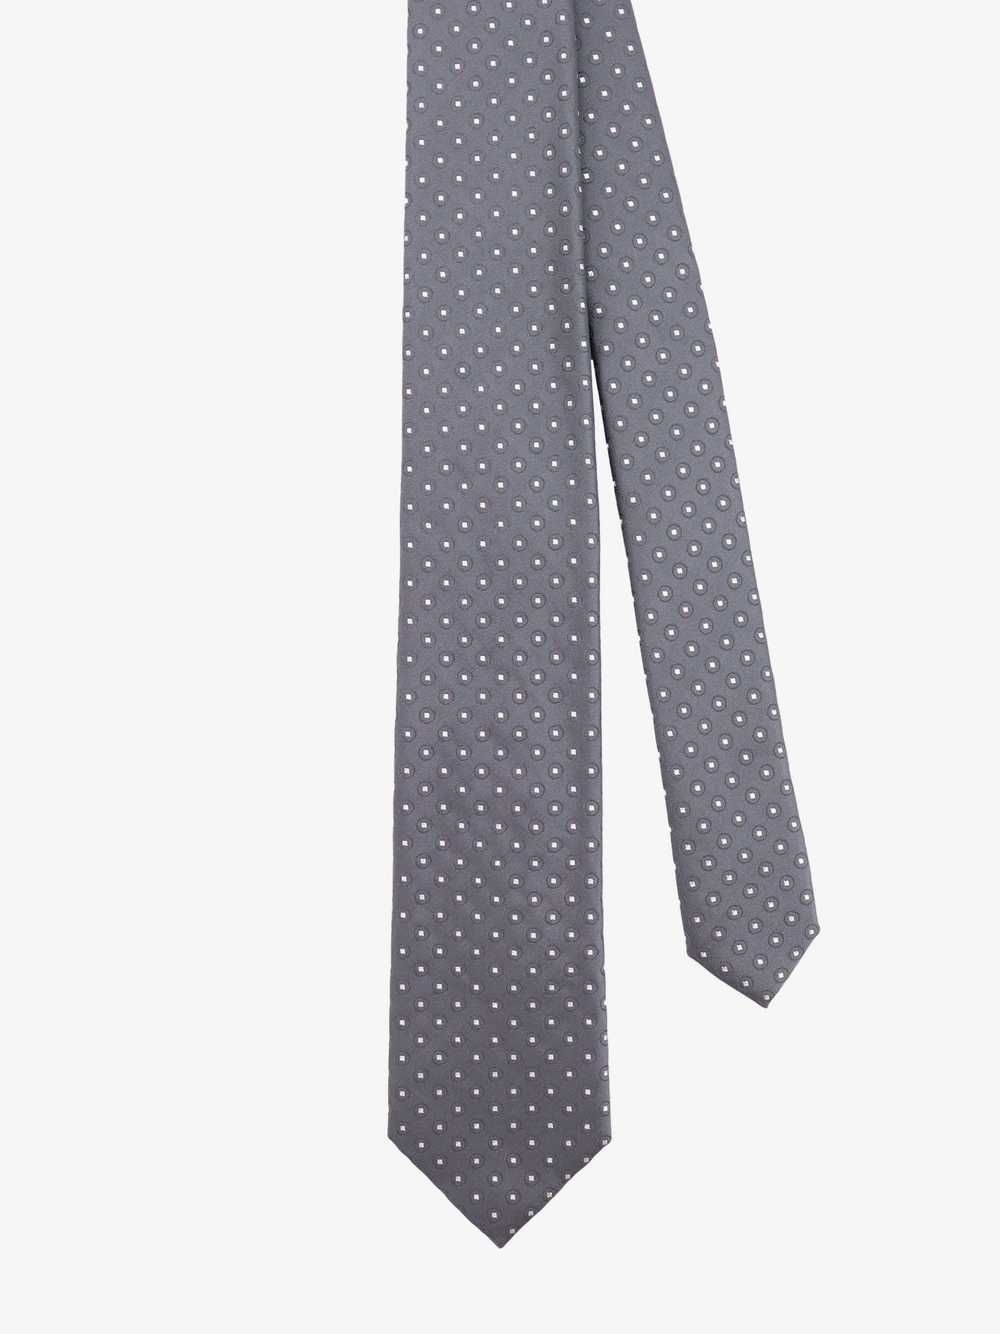 Giorgio Armani Tie Man Grey Bowties E Ties - image 2